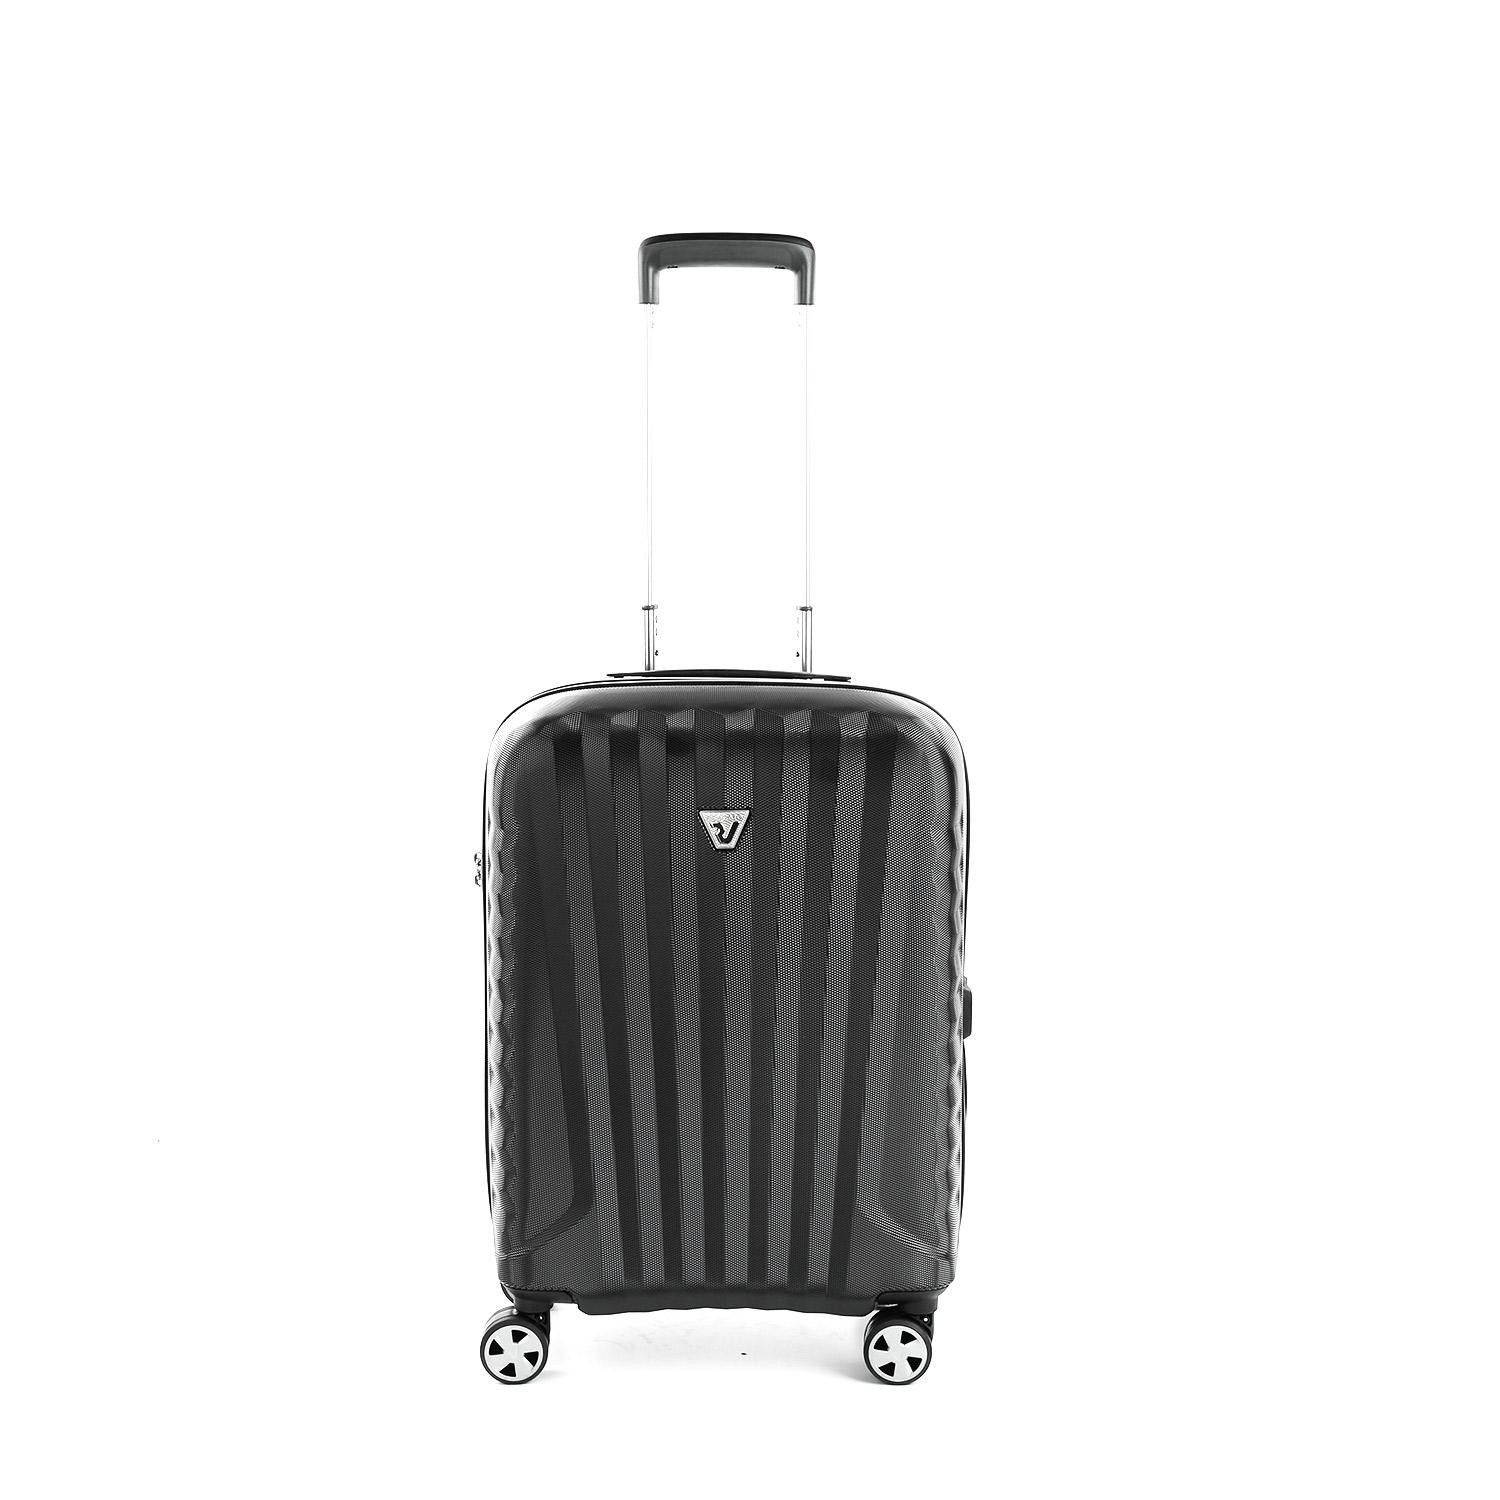 Маленька валіза Roncato UNO ZSL Premium 2.0 5463/0101